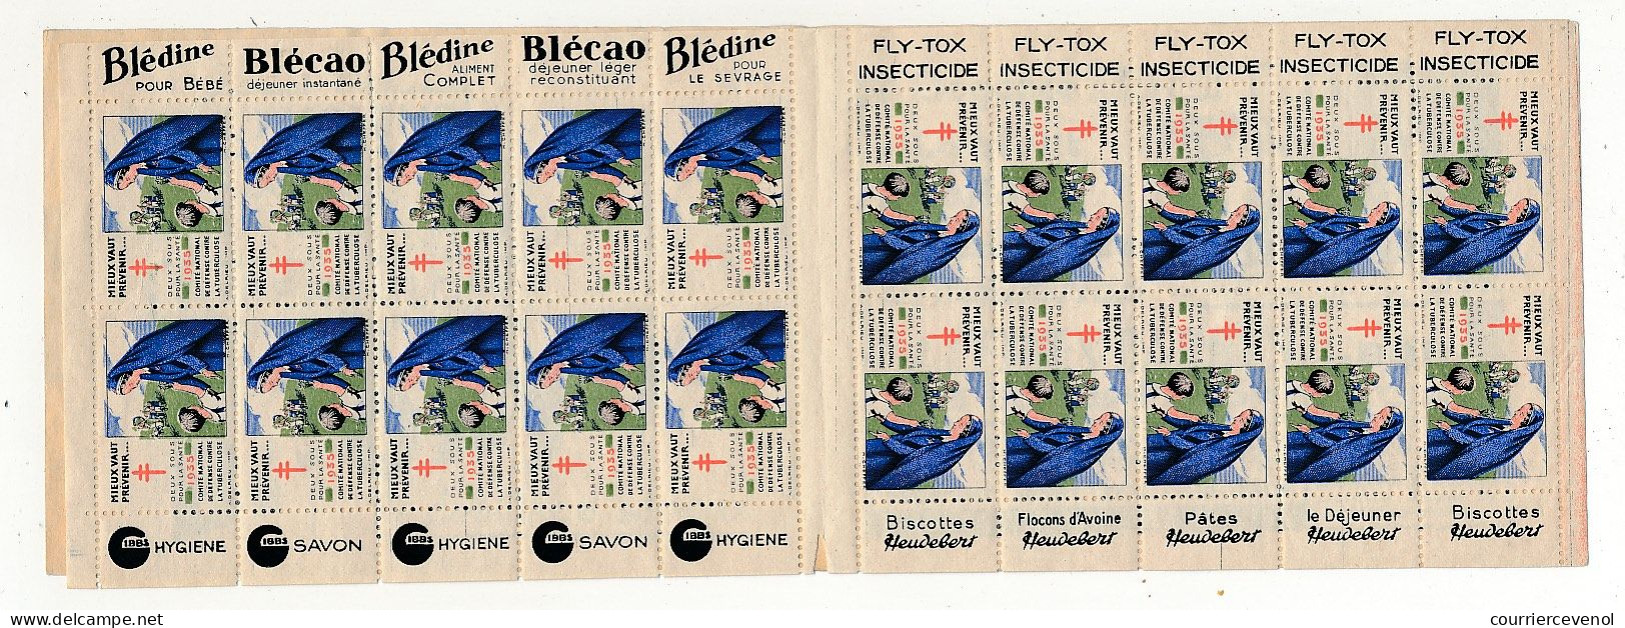 Carnet Anti-tuberculeux 1935 - 2 Fr - Le Timbre 10c (Complet, SANS GOMME) - Pubs Blédine, Blécao, Gibss, Fly-Tox, ... - Blocks & Sheetlets & Booklets